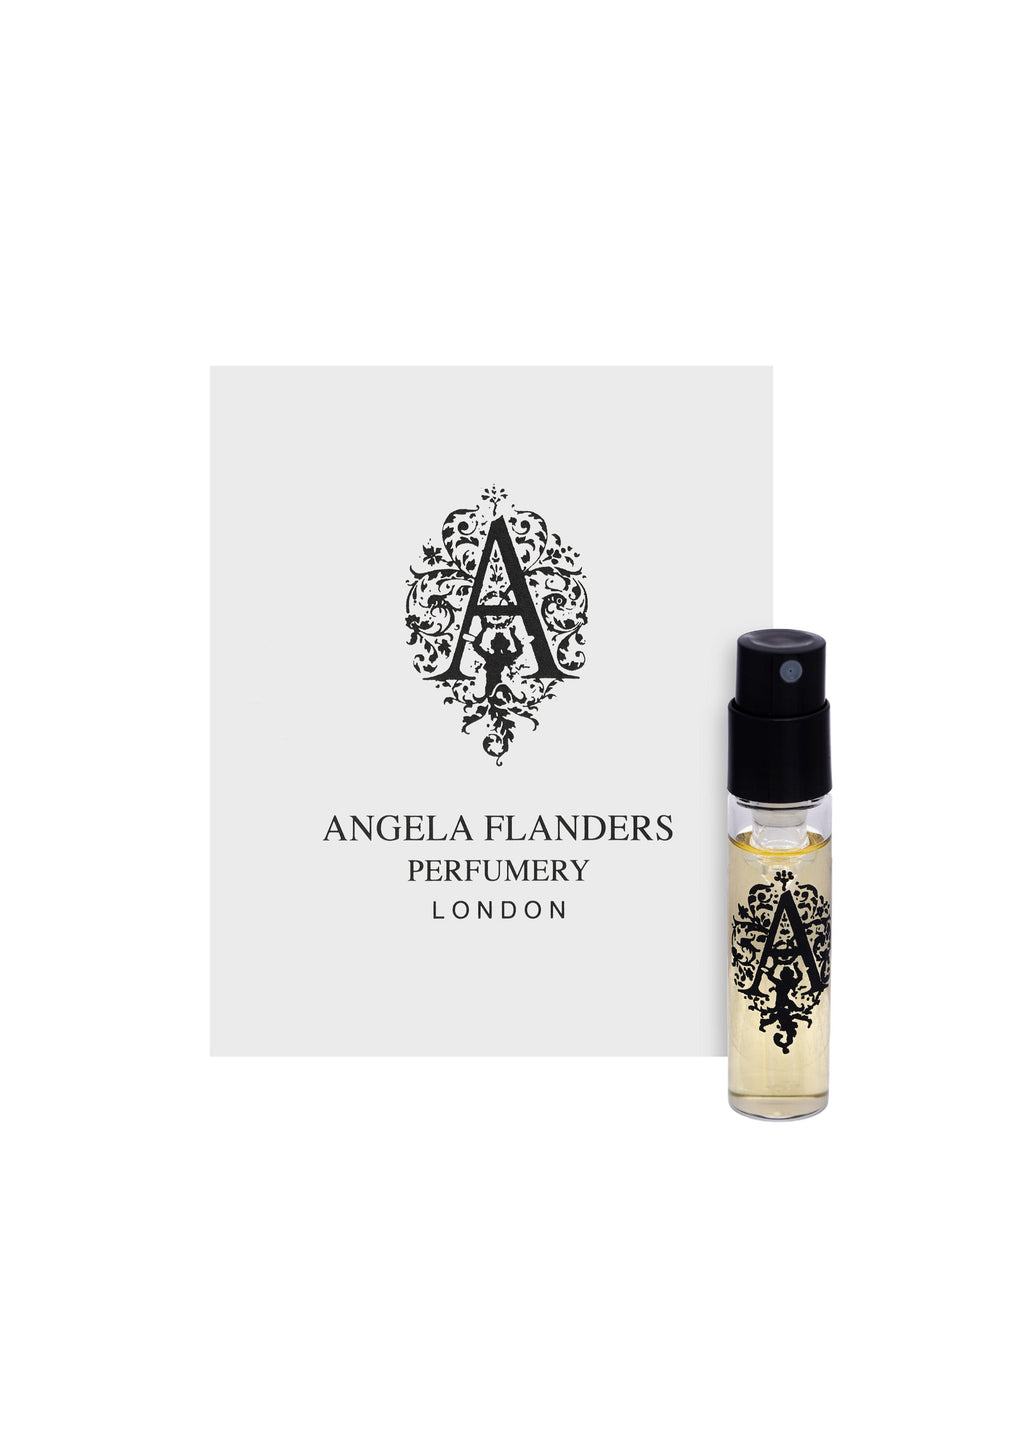 Angela Flanders Oudh Bakhoor Eau de Parfum Sample